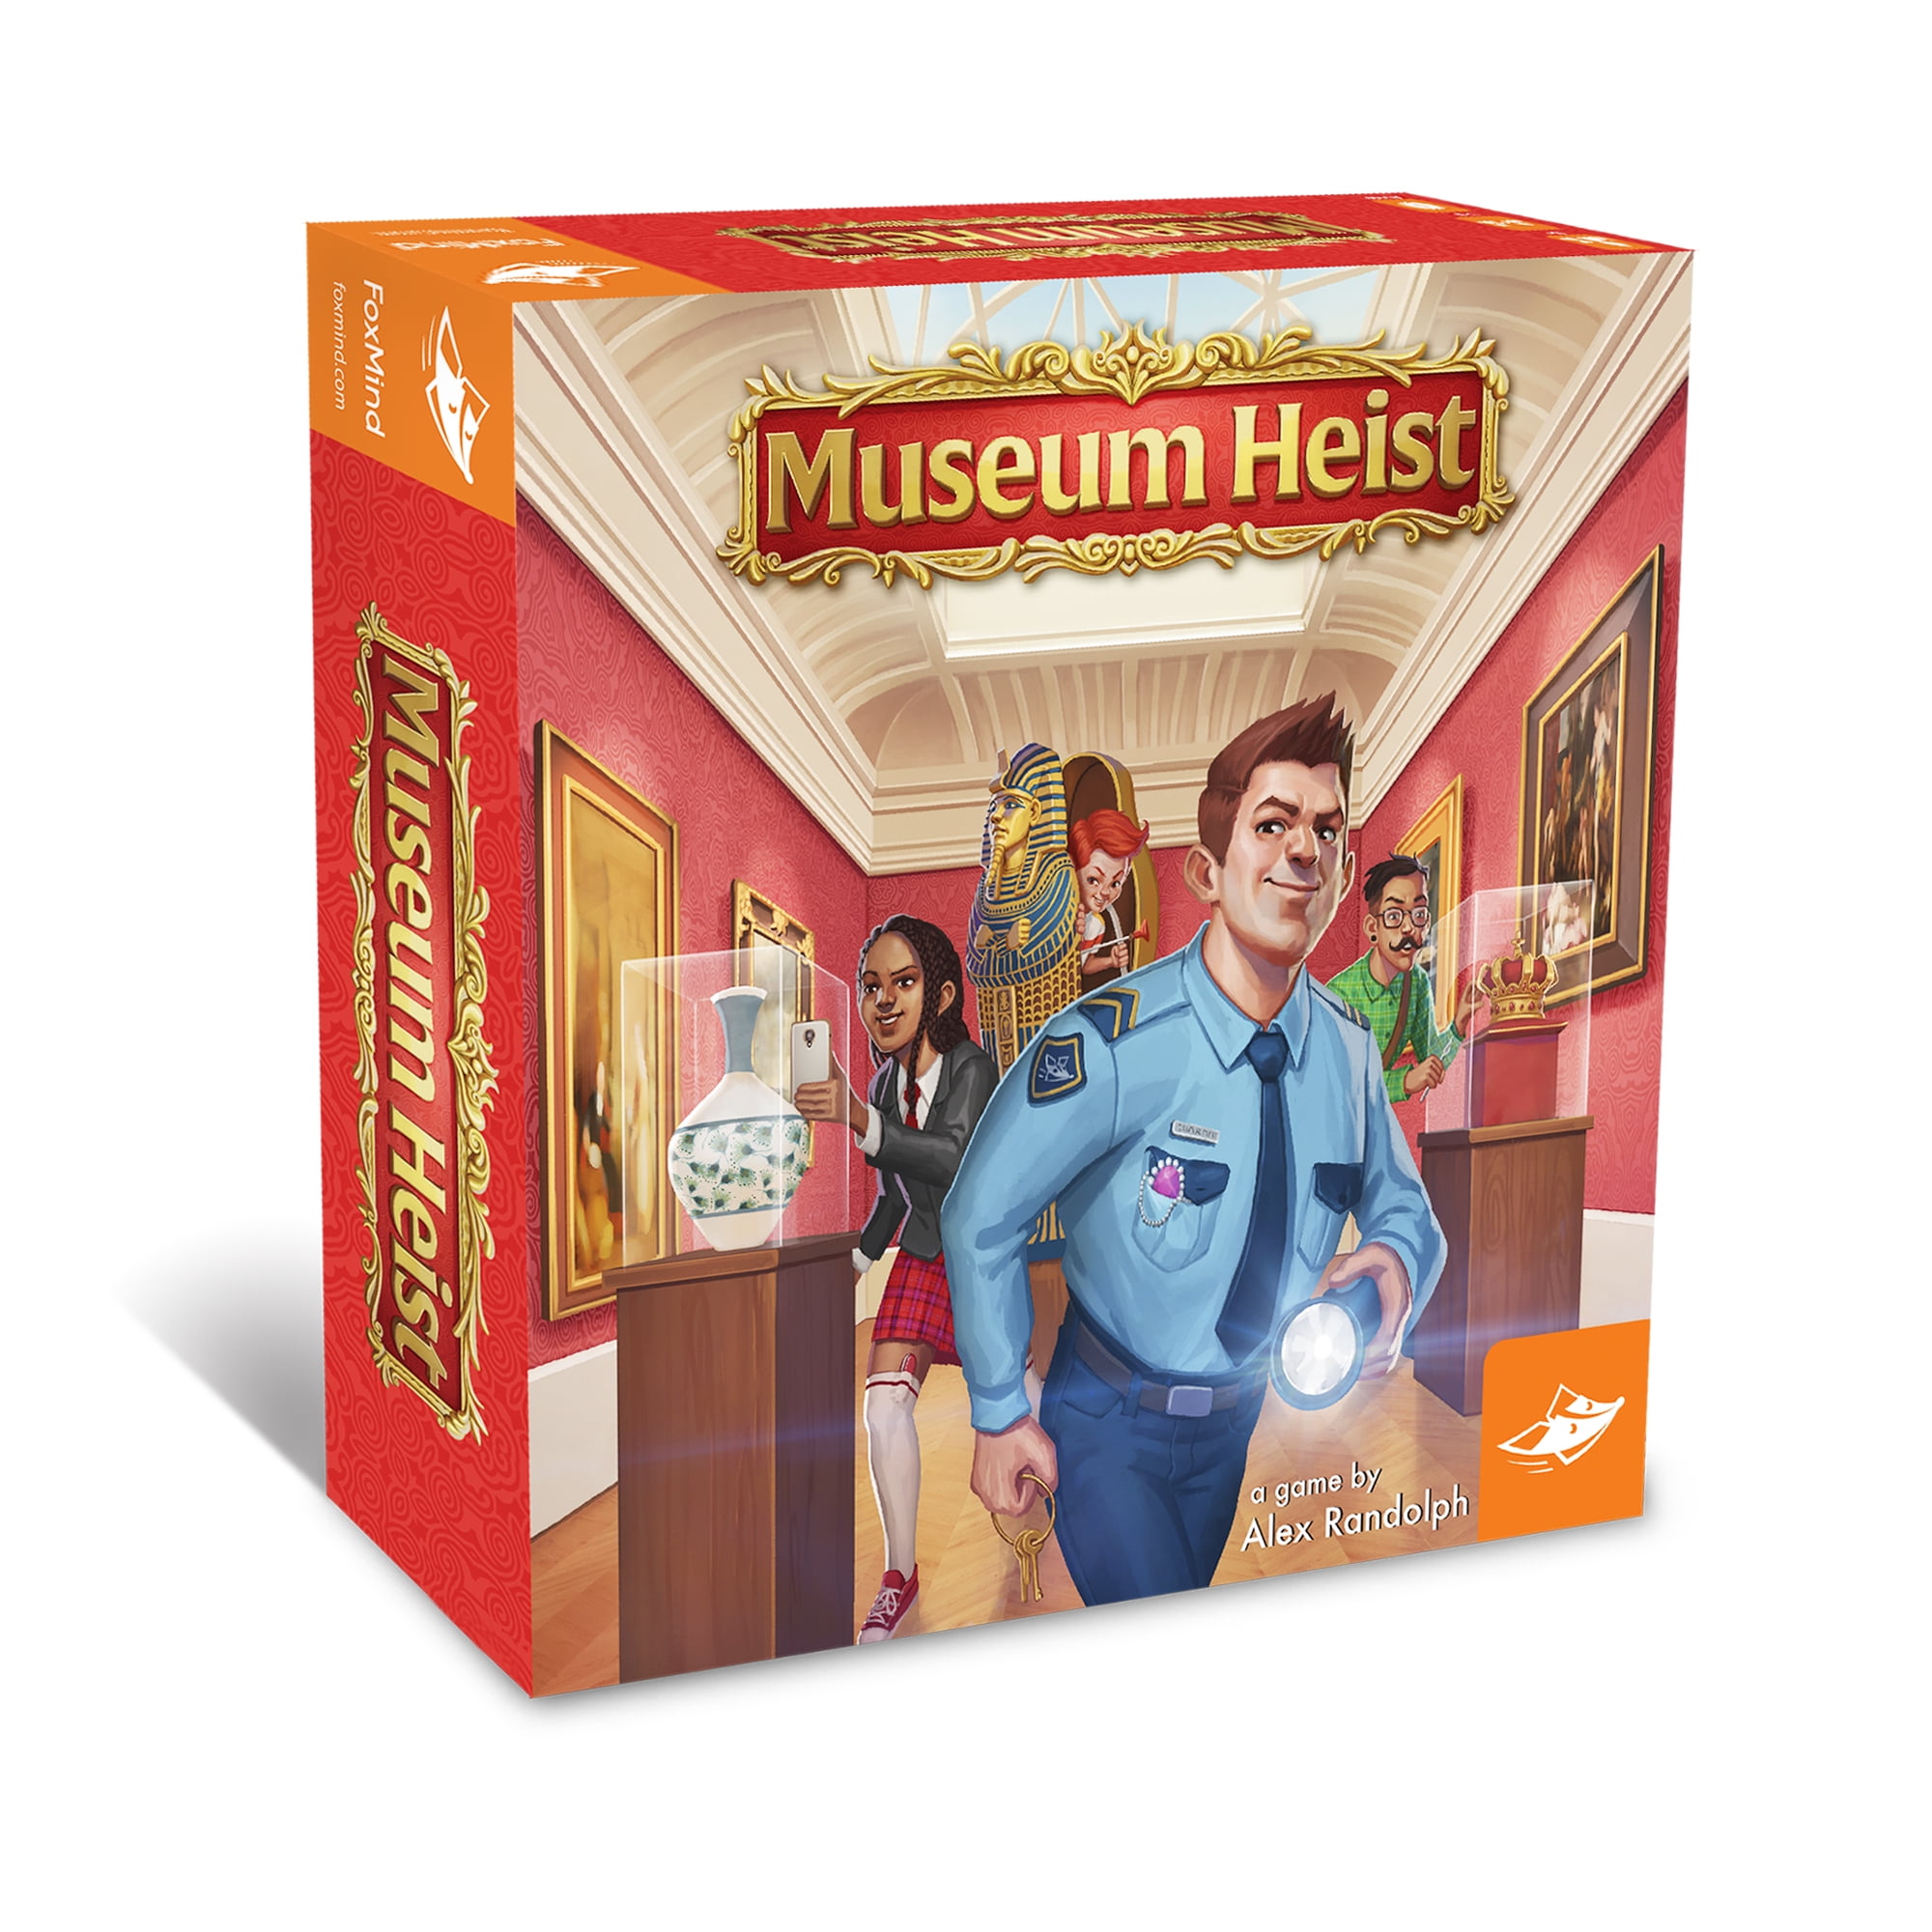 Museum Heist Walmartcom - roblox museum heist toy walmart